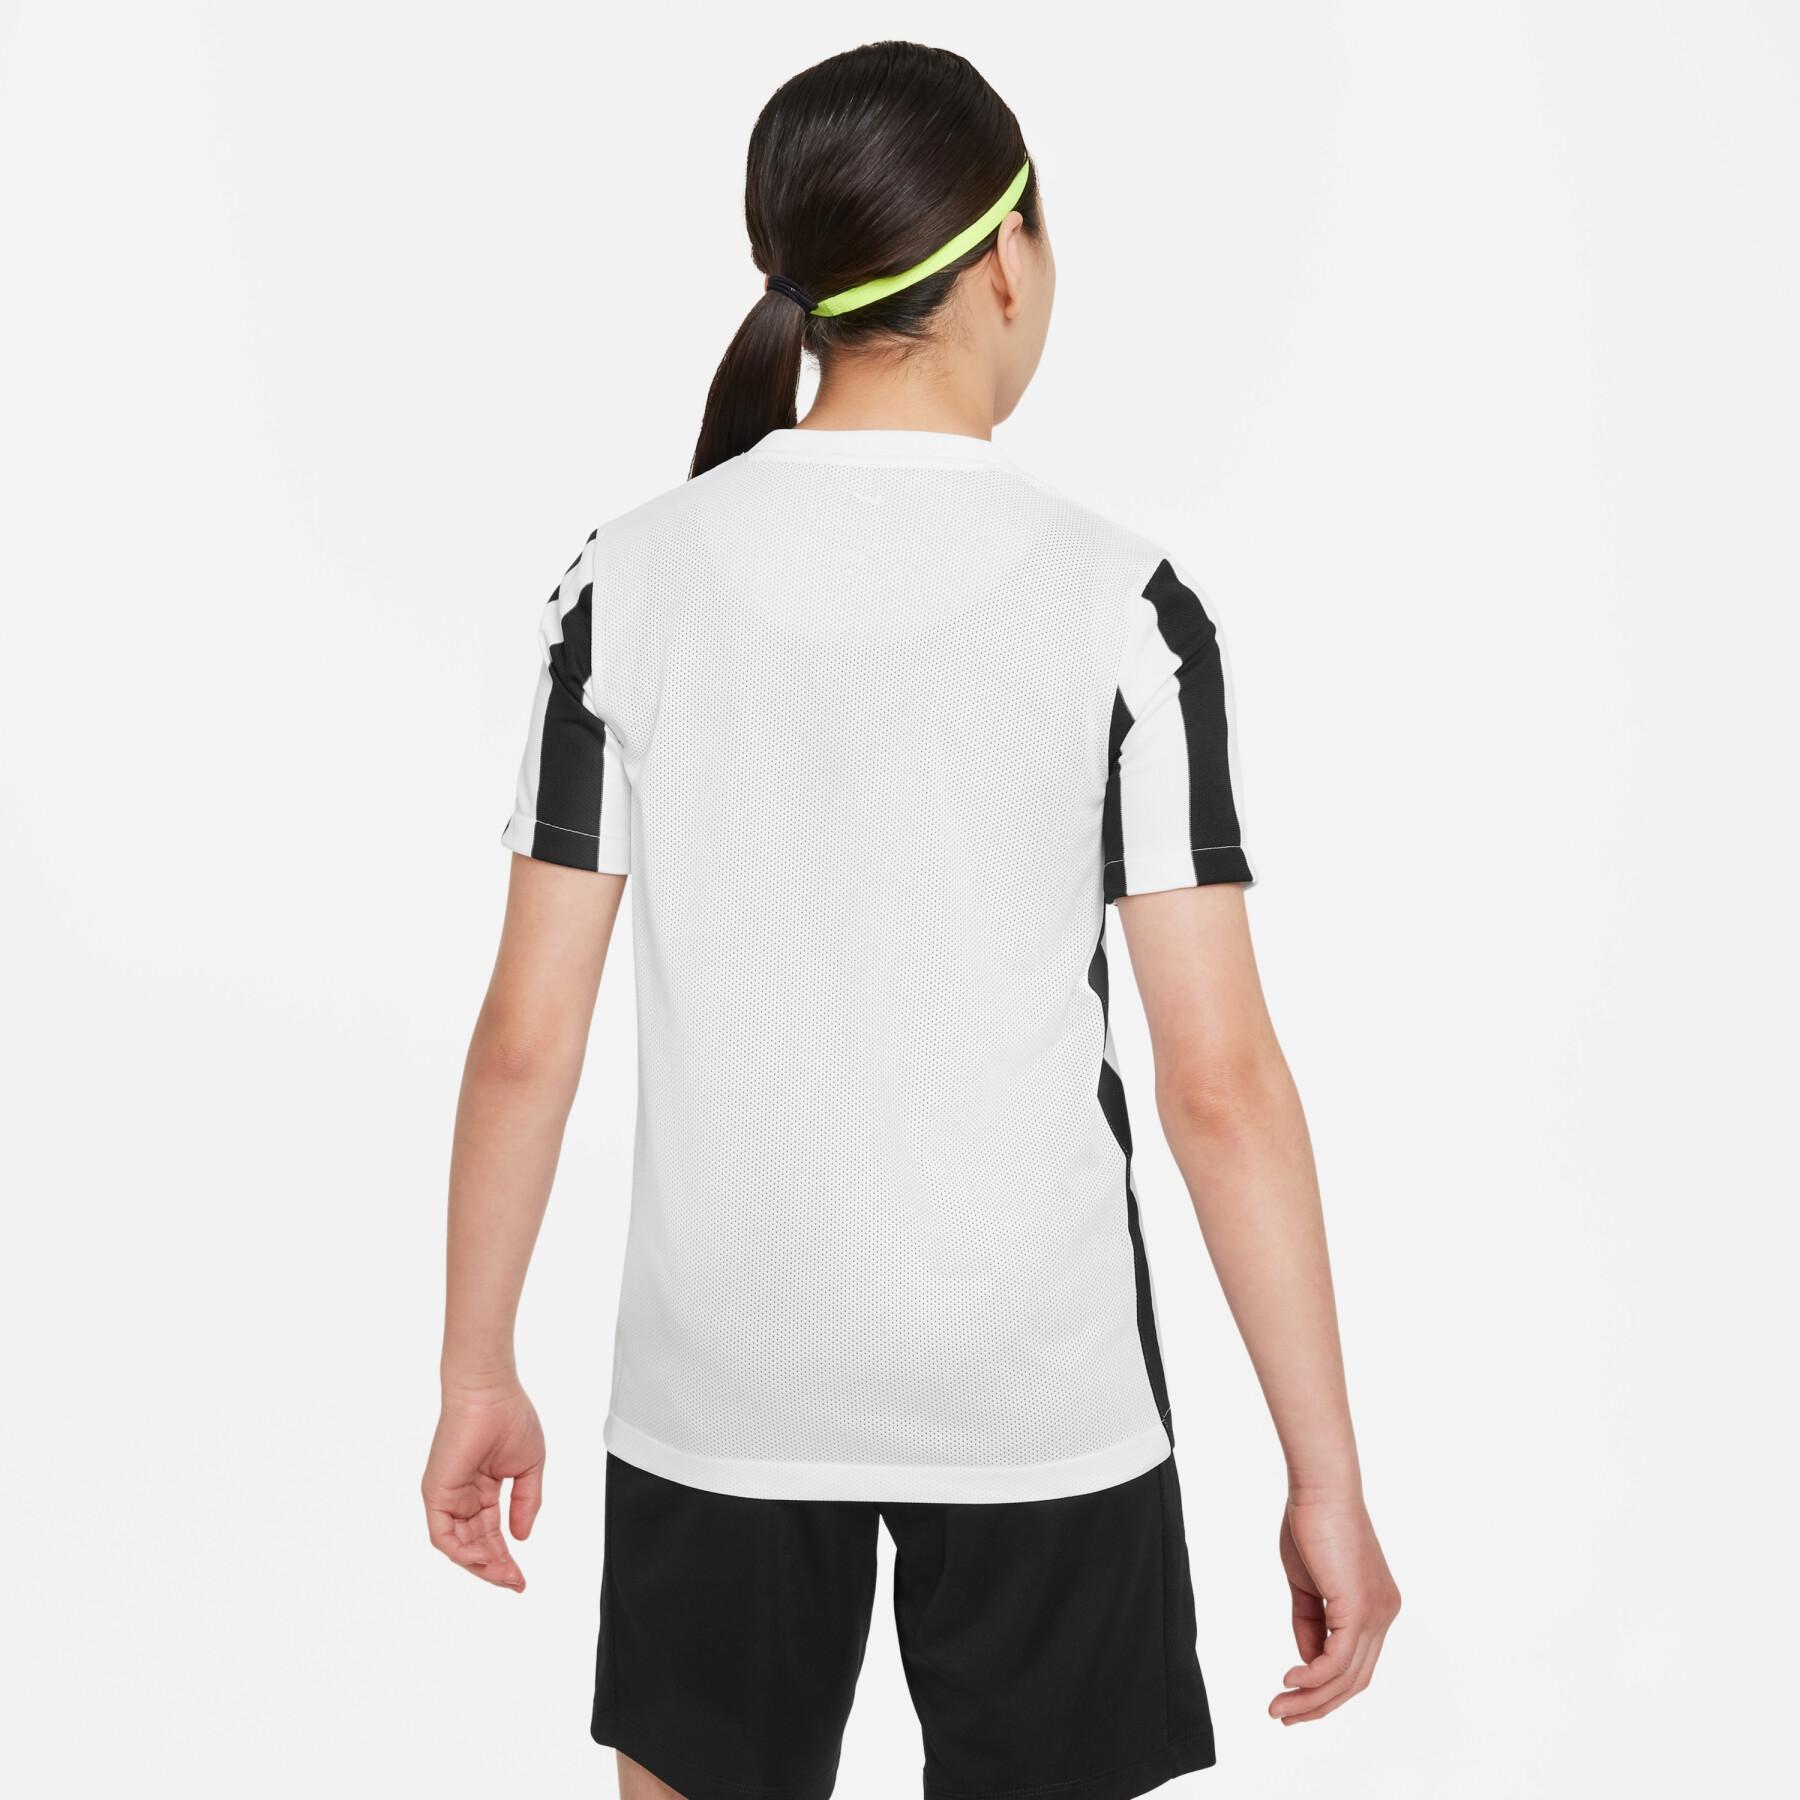 Camiseta para niños Nike Dynamic Fit